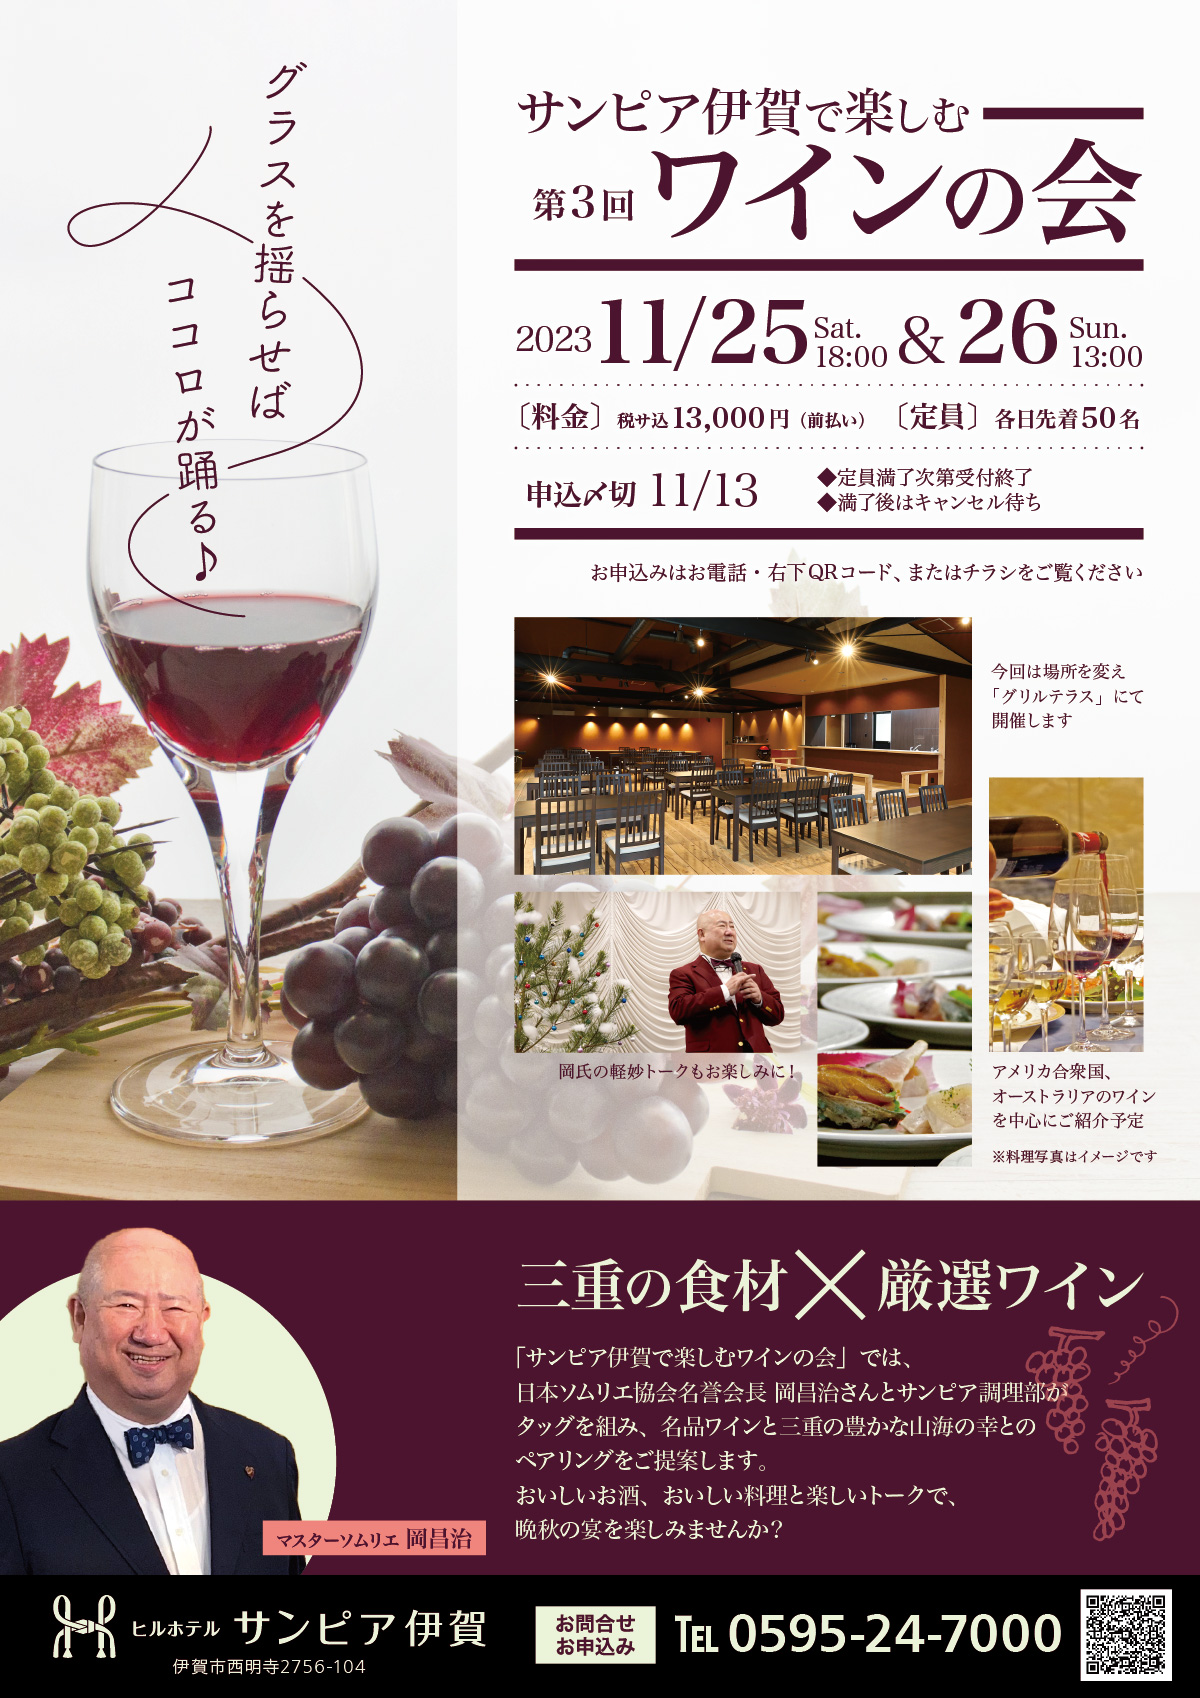 日本ソムリエ協会名誉会長である岡昌治氏をお招きしてのワインの会は、第3回。今回は「アメリカ合衆国・オーストラリア」をテーマにワインをご紹介予定。11月25日18時の部、26日13時の部の2回開催。料金は税込13,000円。